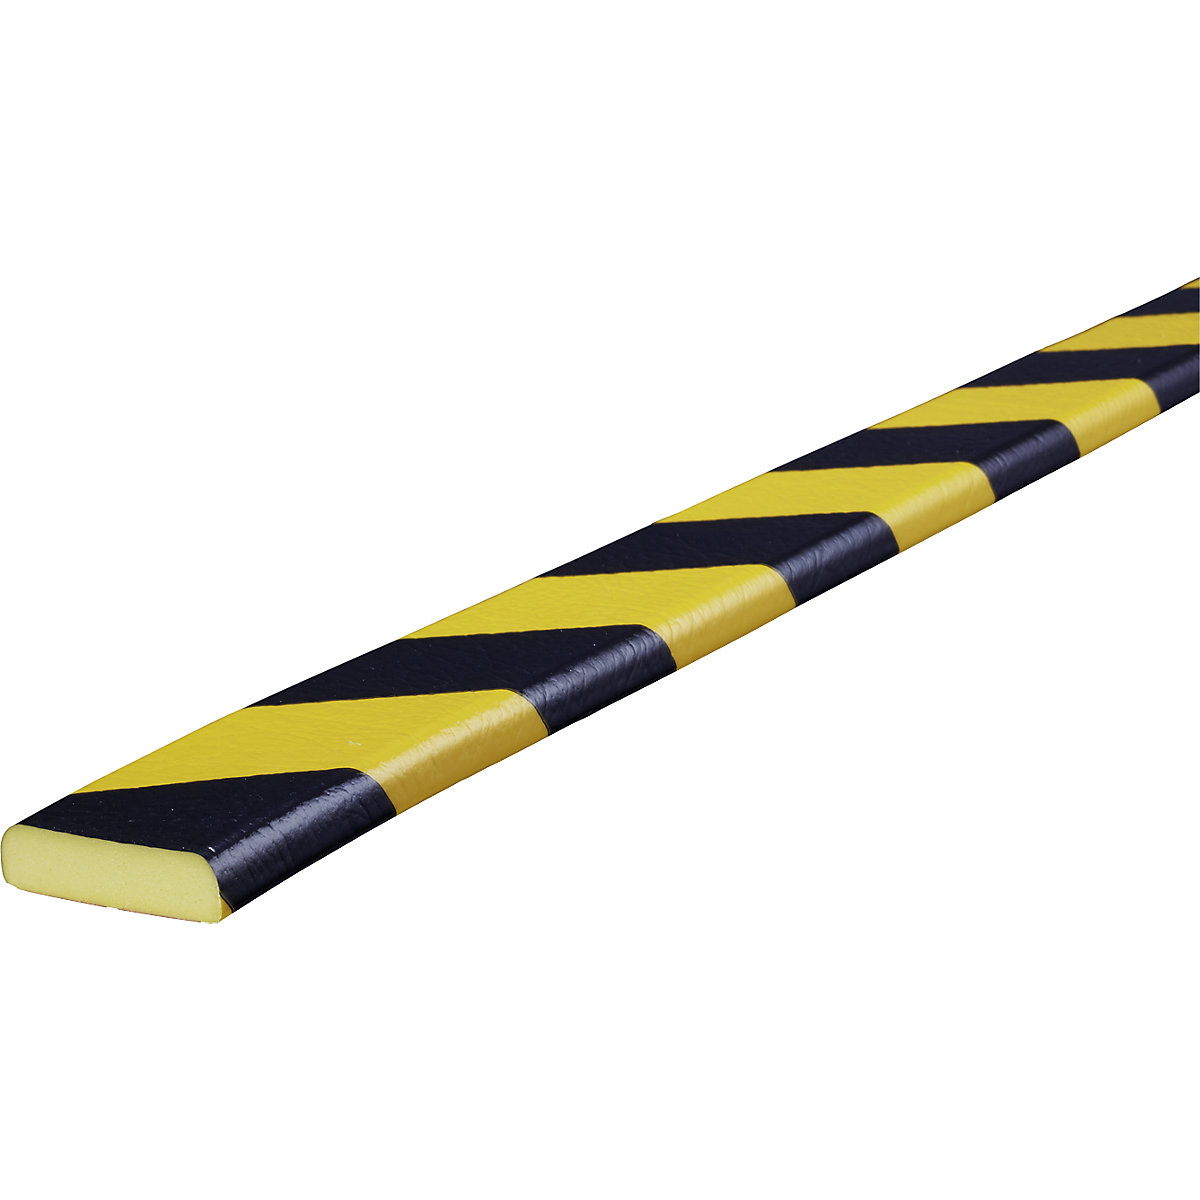 Knuffi®-oppervlaktebescherming – SHG, type F, stuk van 1 m, zwart/geel-31